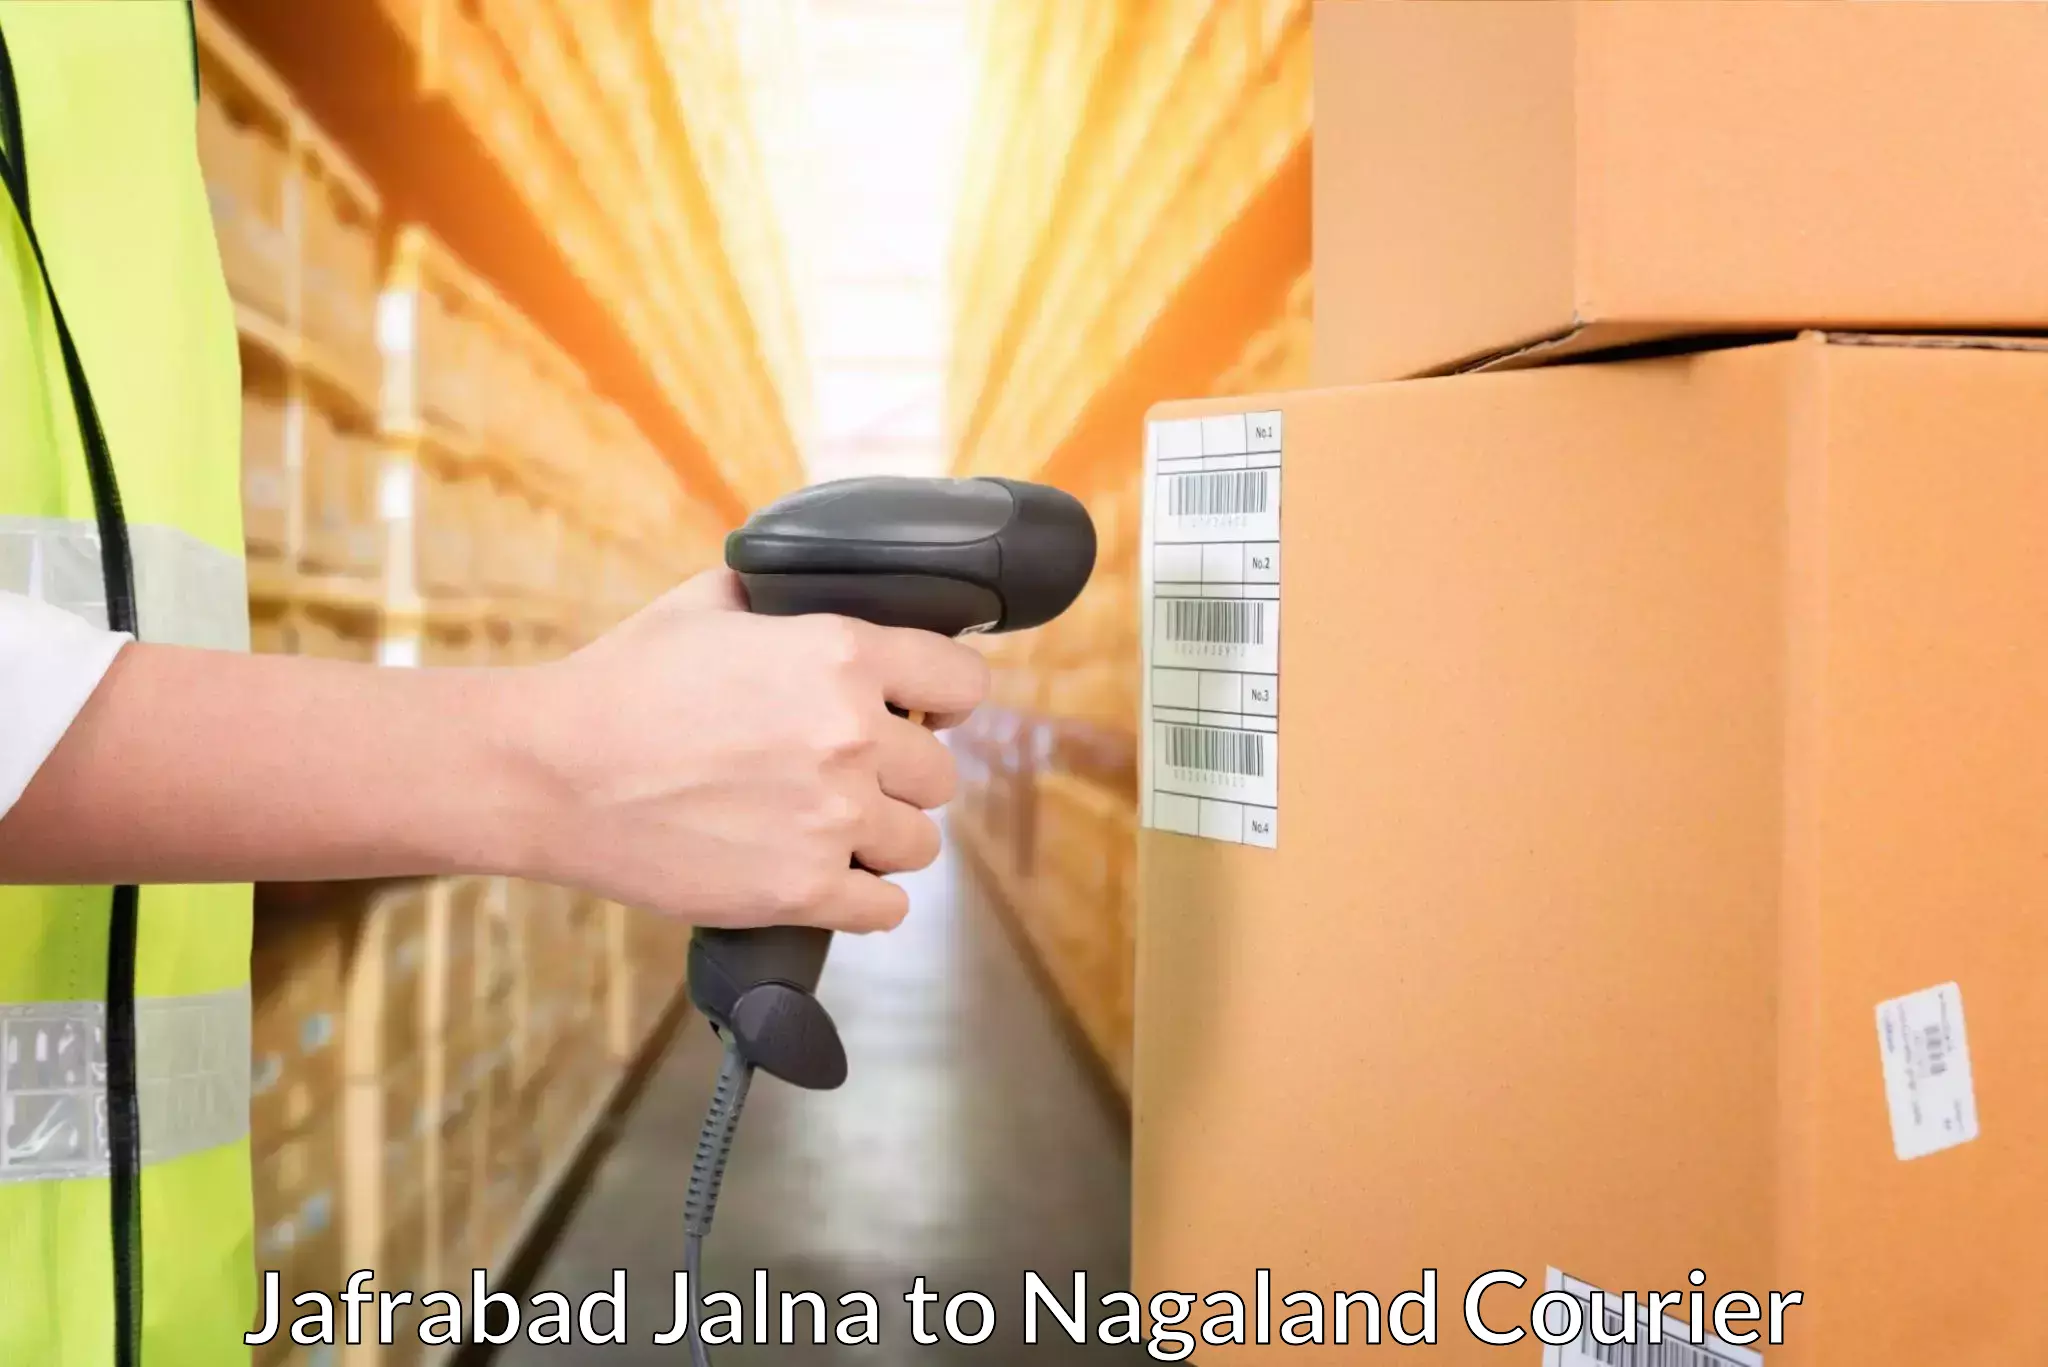 User-friendly courier app Jafrabad Jalna to Peren